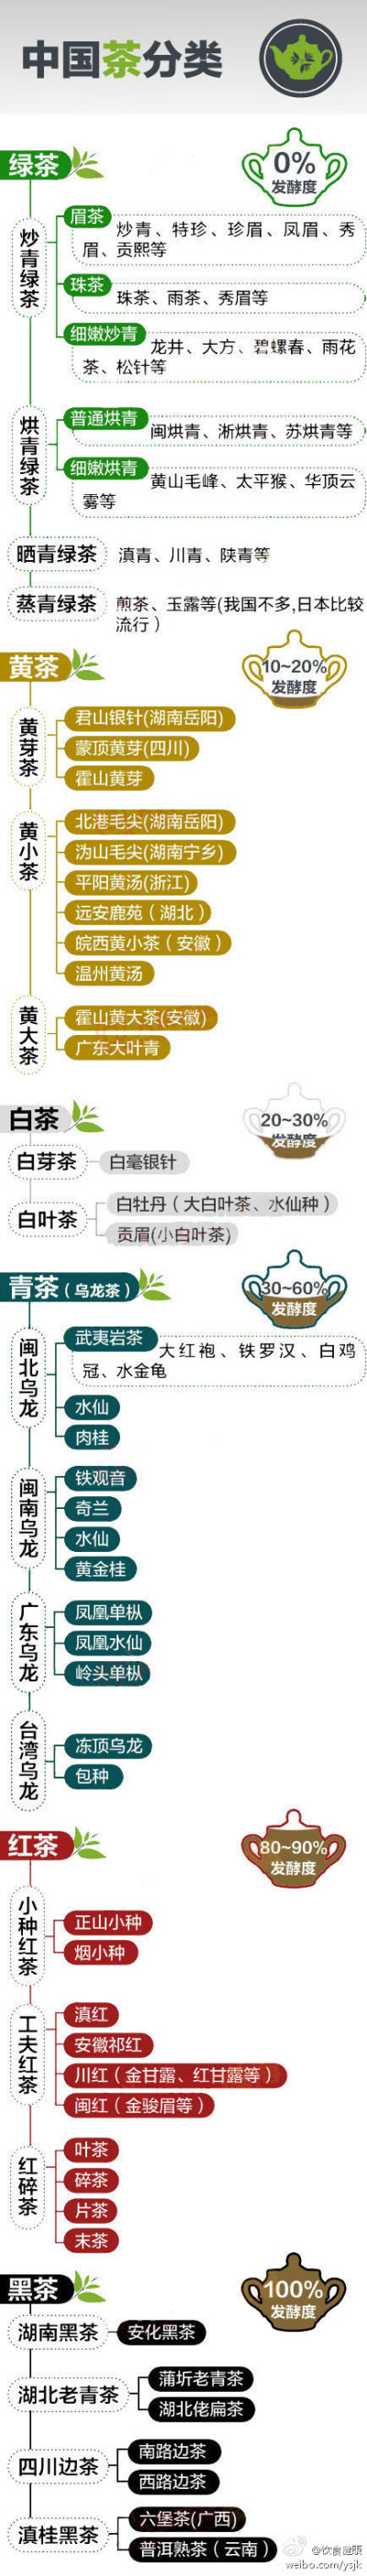 中国茶的分类，绿茶、黄茶、白茶、青茶、红茶、黑茶……名目繁多。